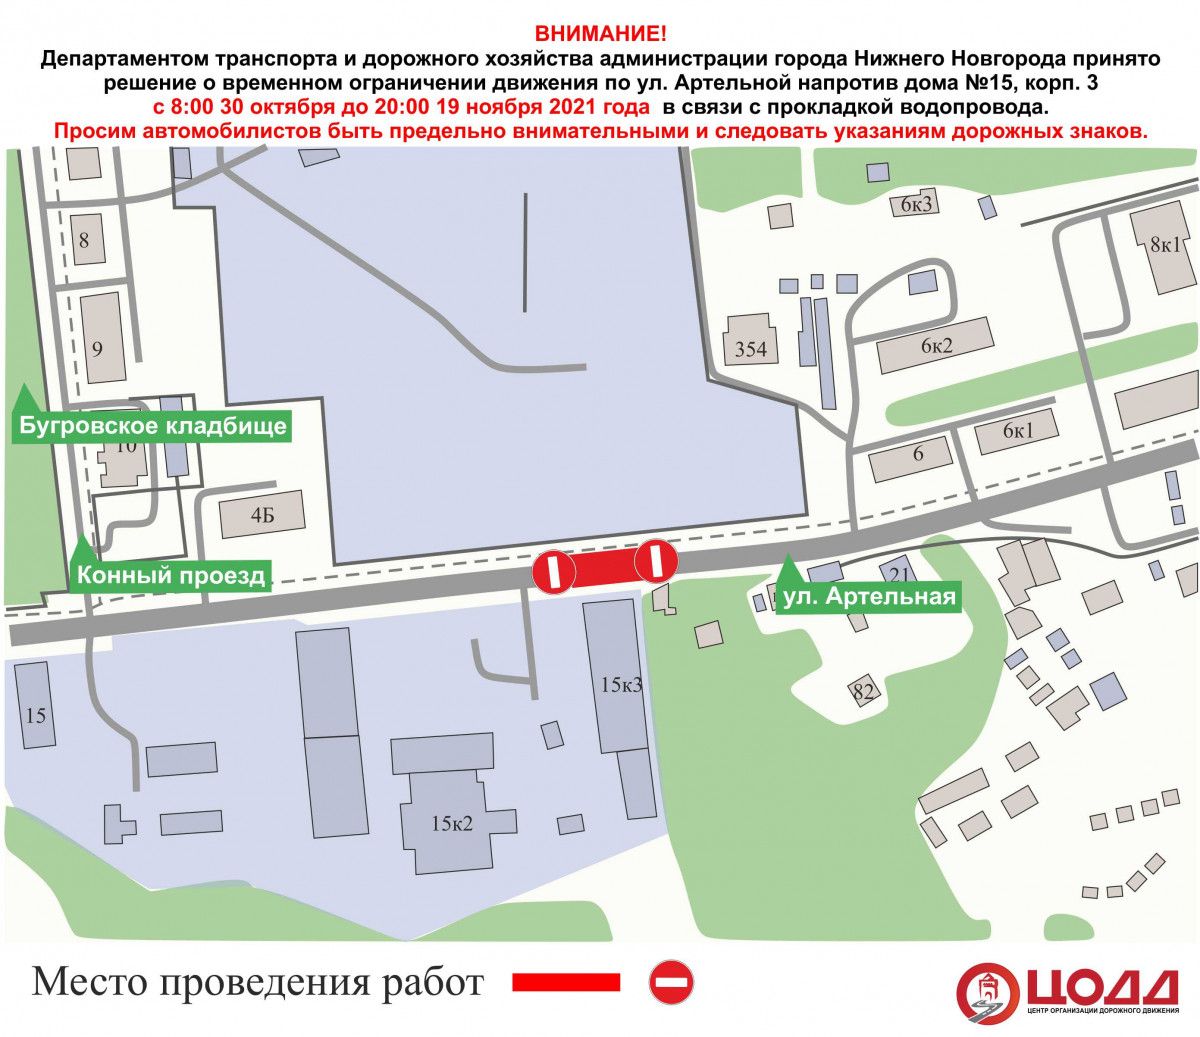 Движение автобуса А-27 будет изменено в Нижнем Новгороде до 19 ноября